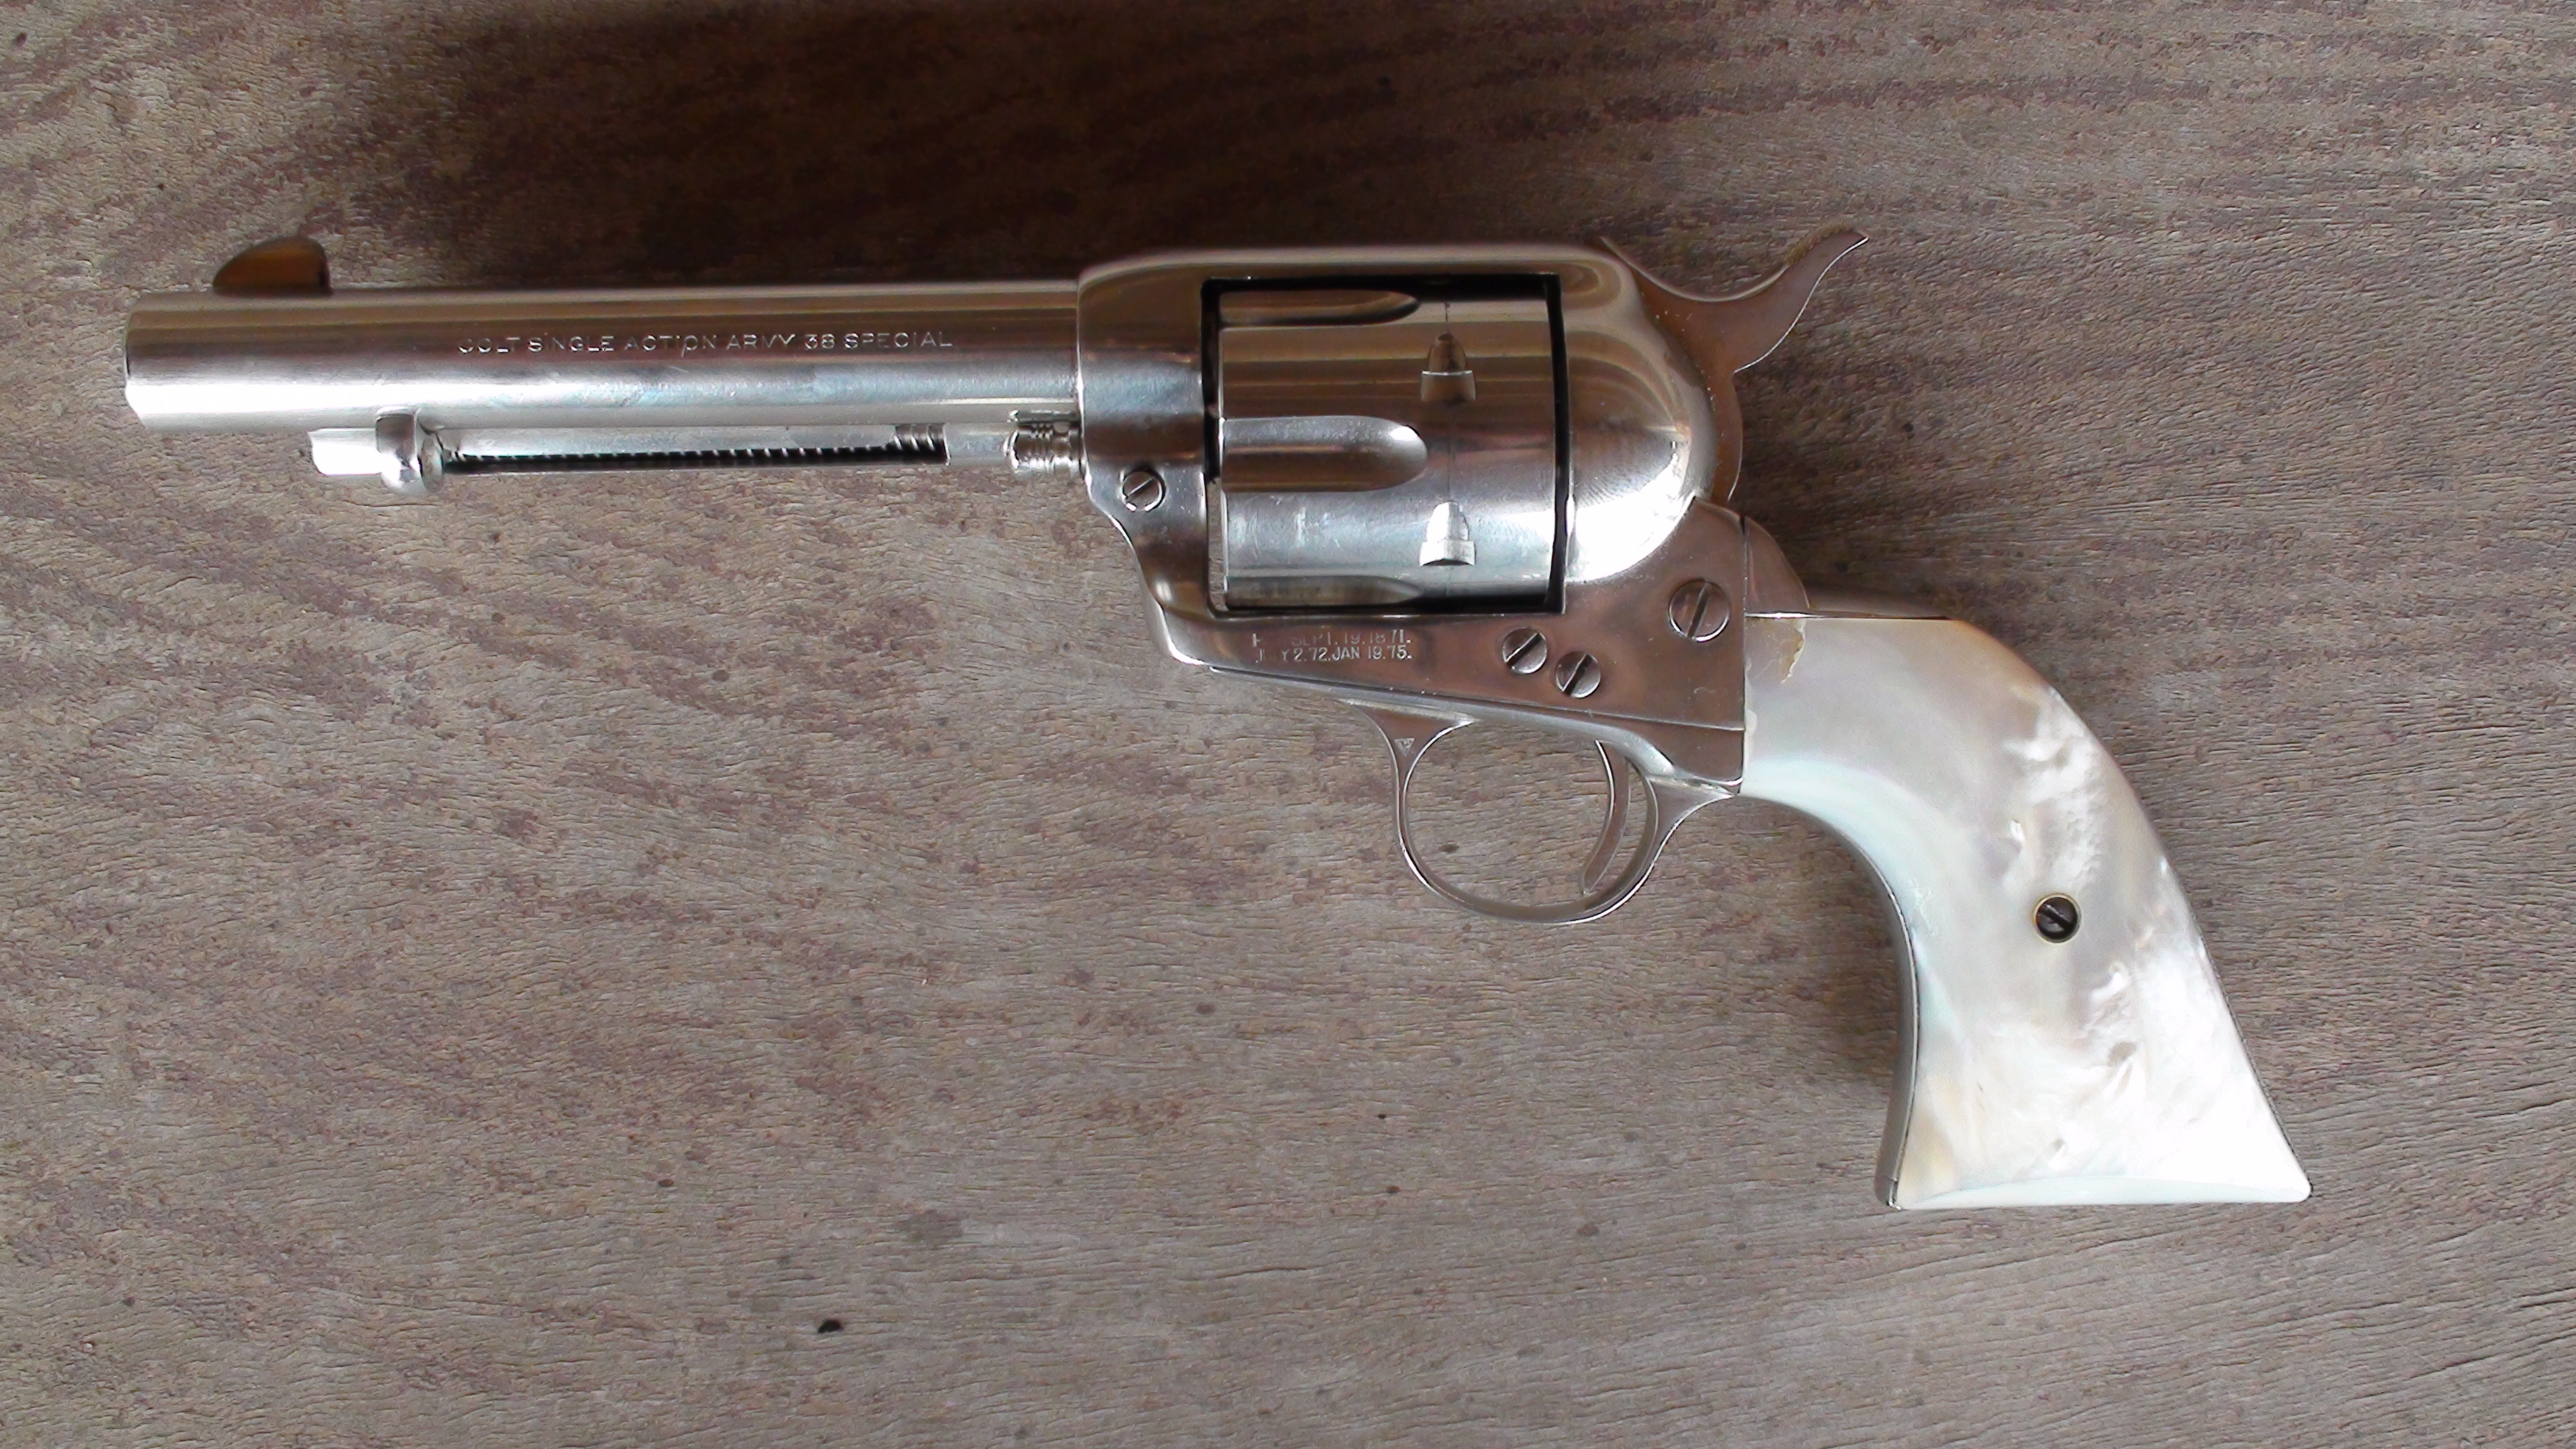 Sundown-western-colt-pistol-pearl-grips